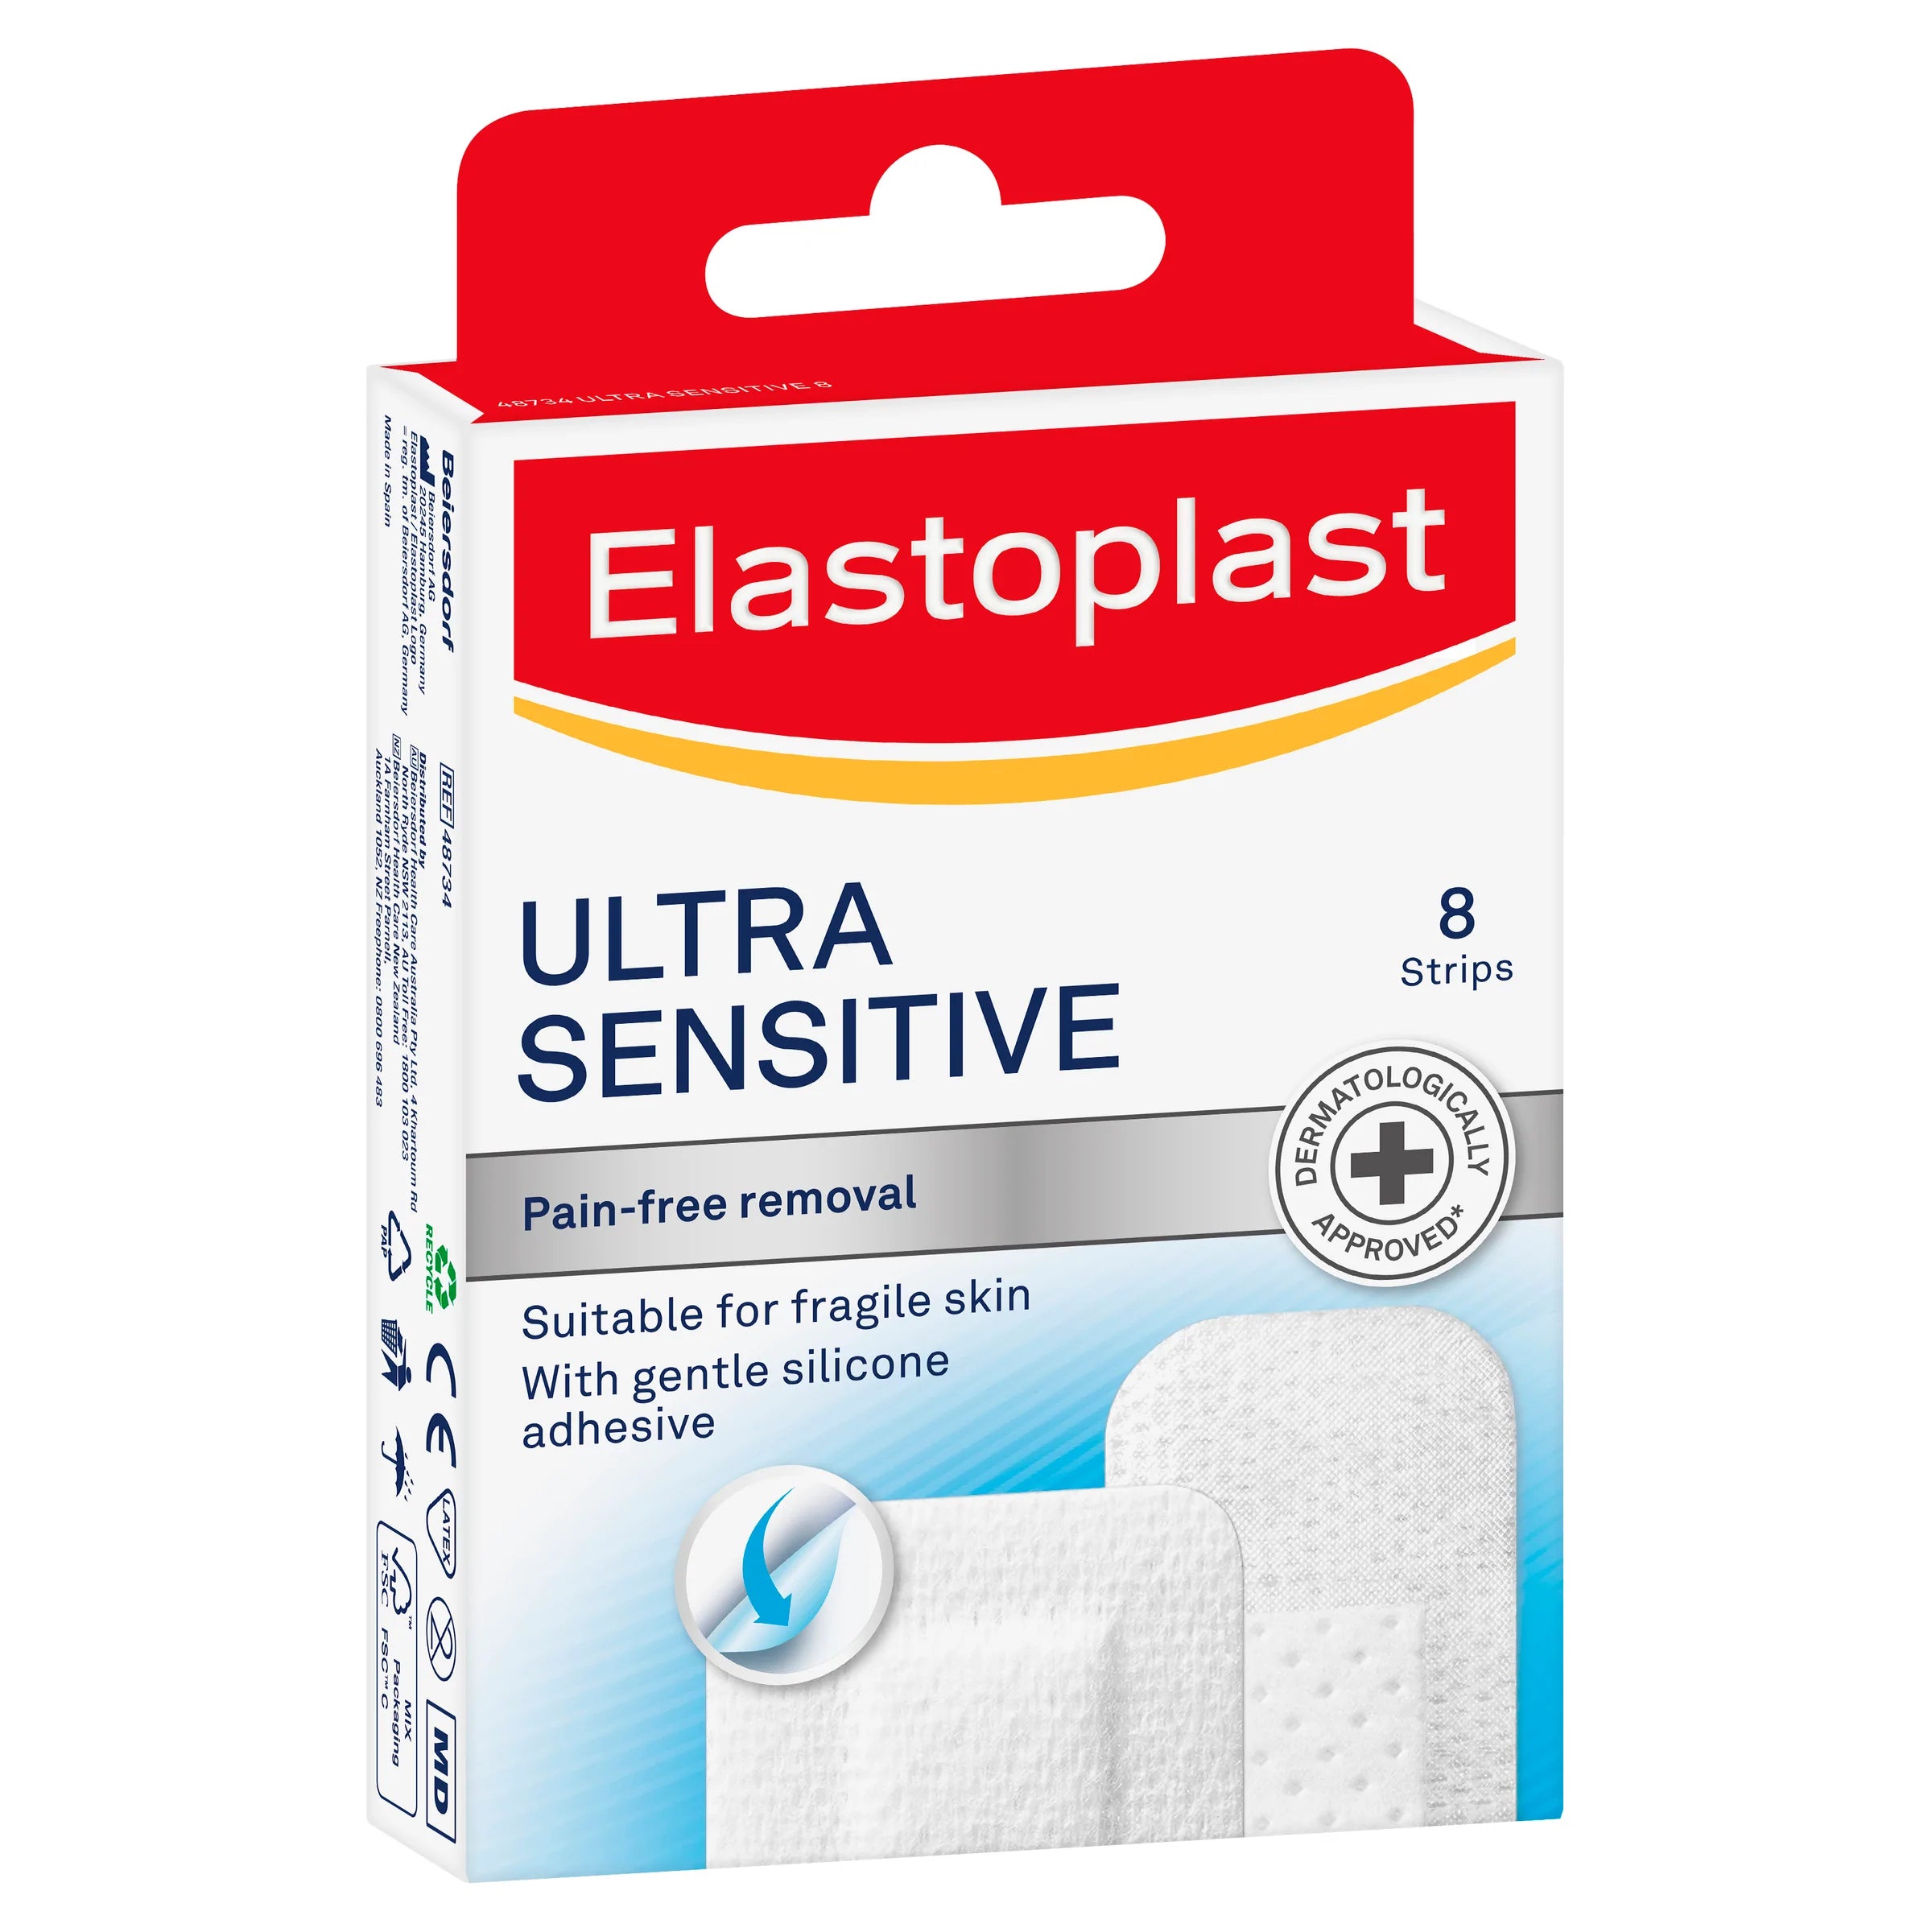 Elastoplast Elastic Fabric Roll Plaster